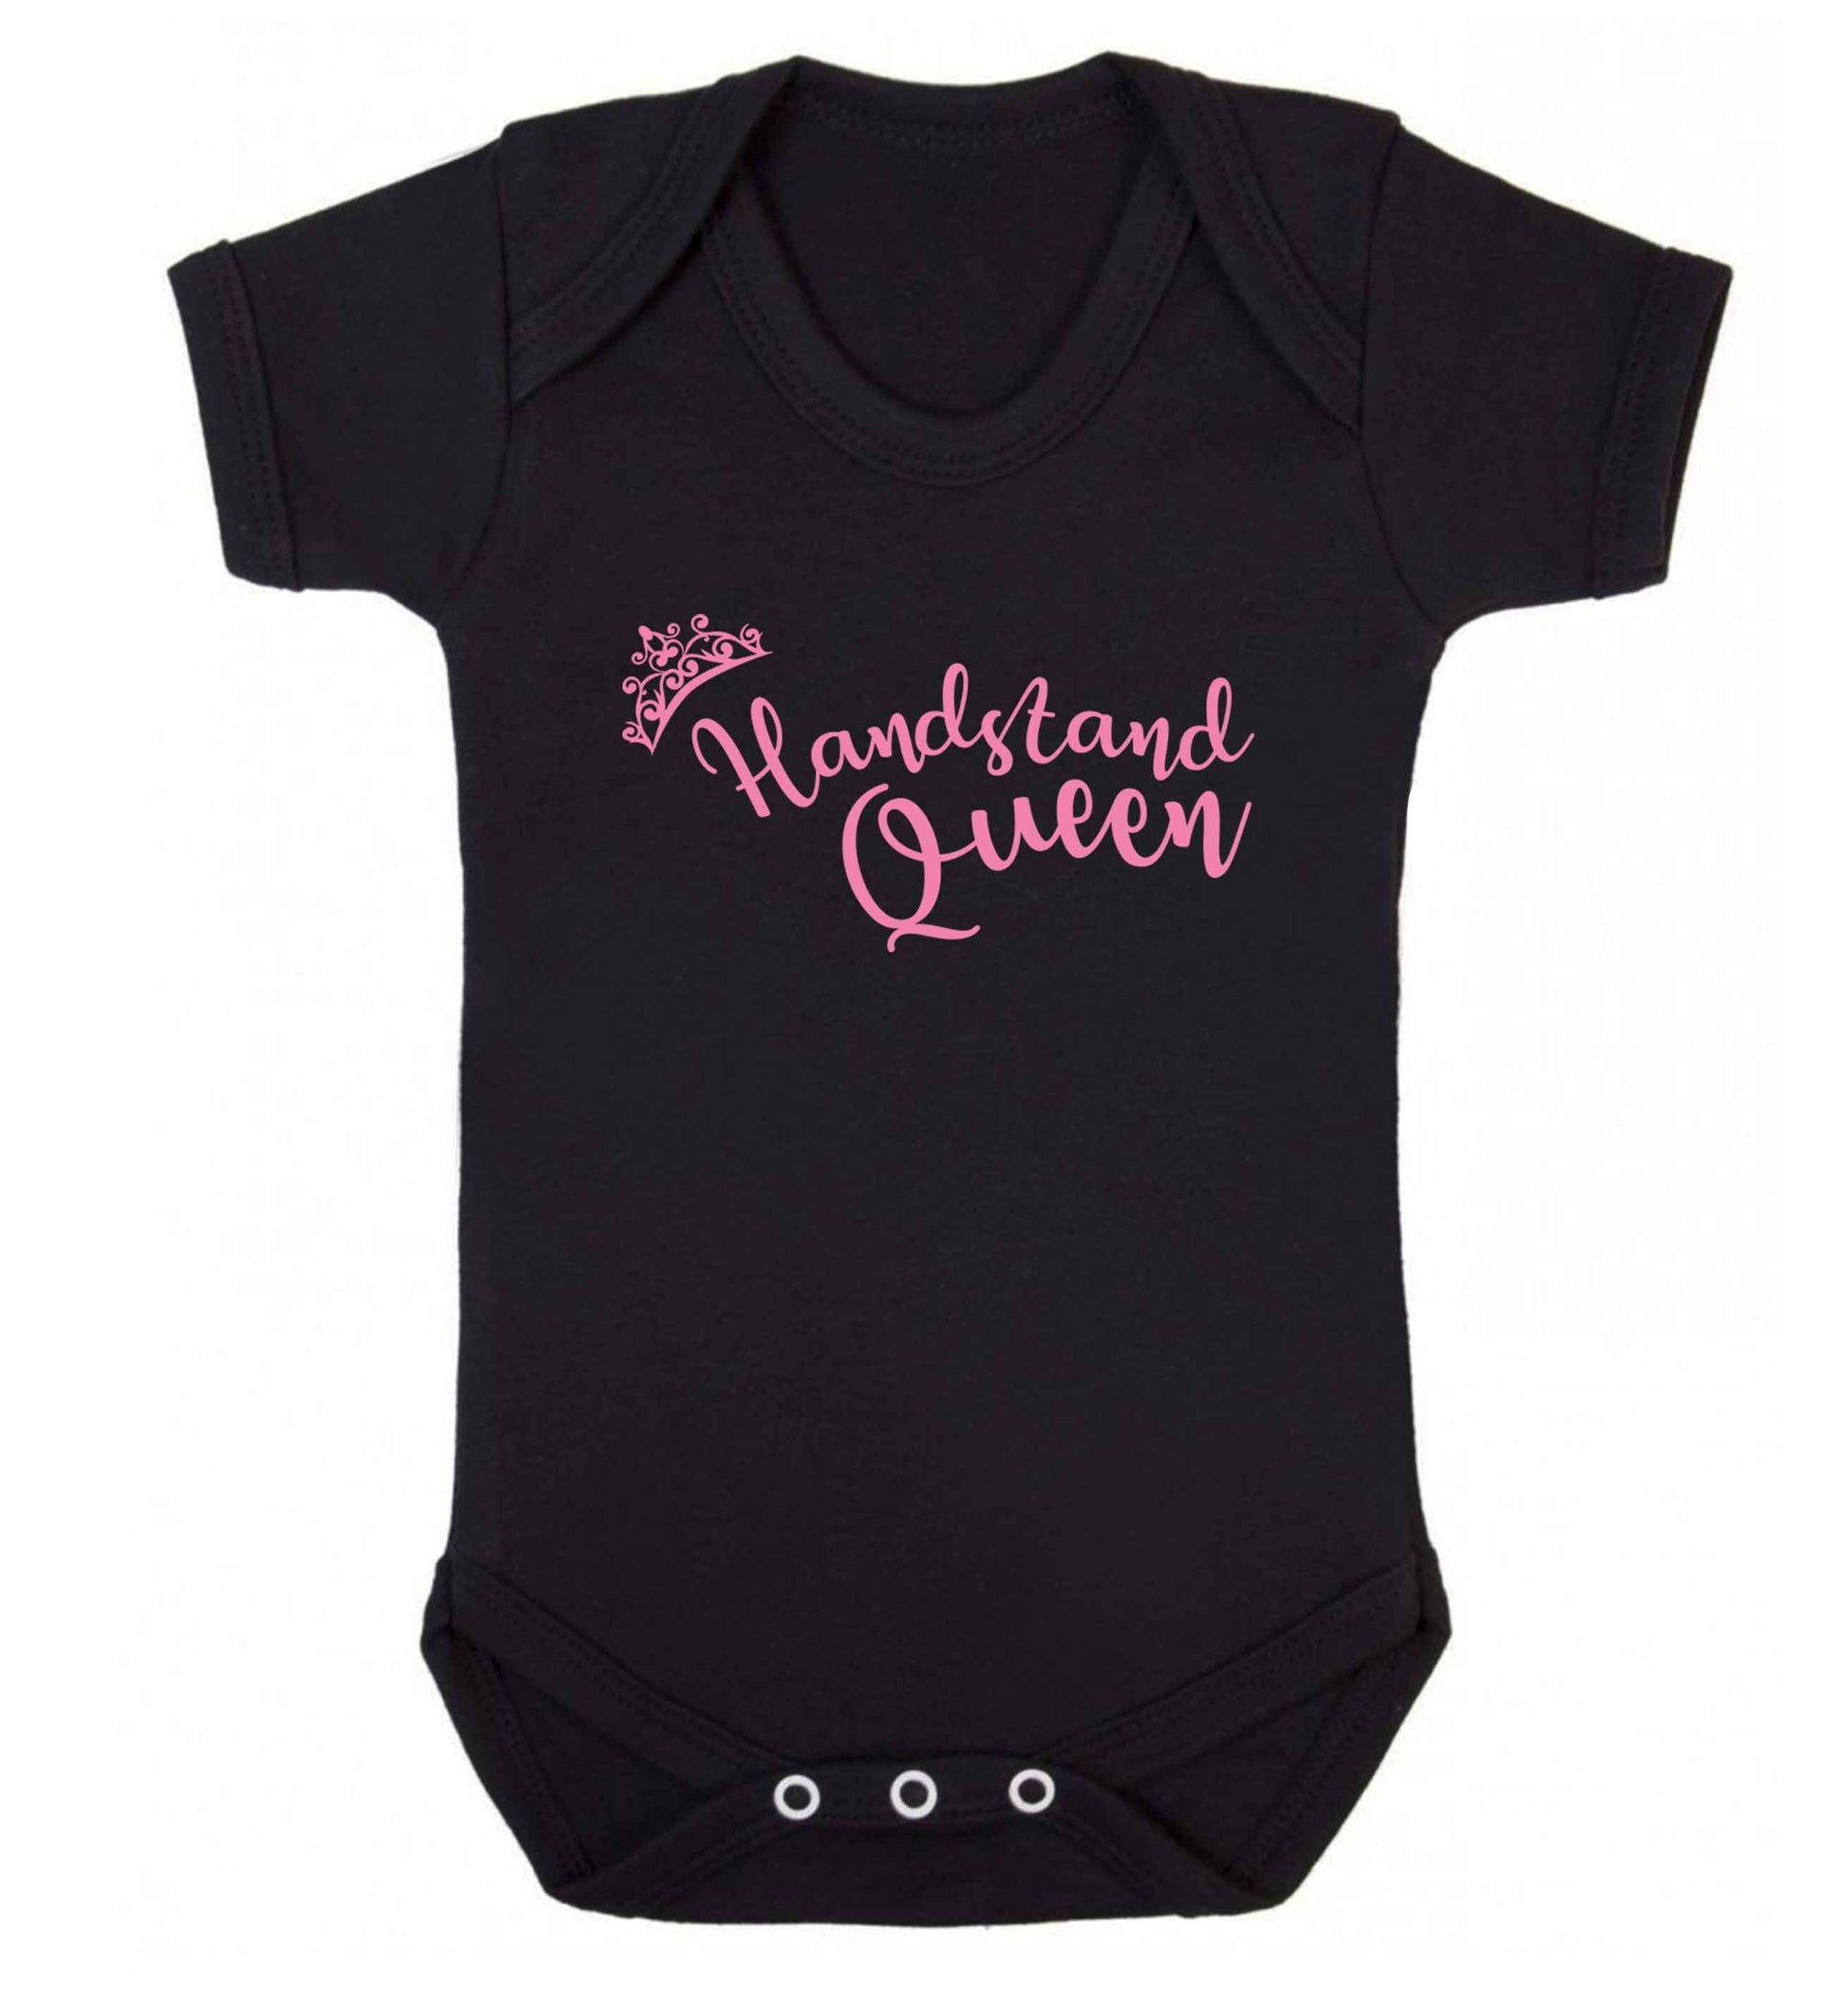 Handstand Queen Baby Vest black 18-24 months